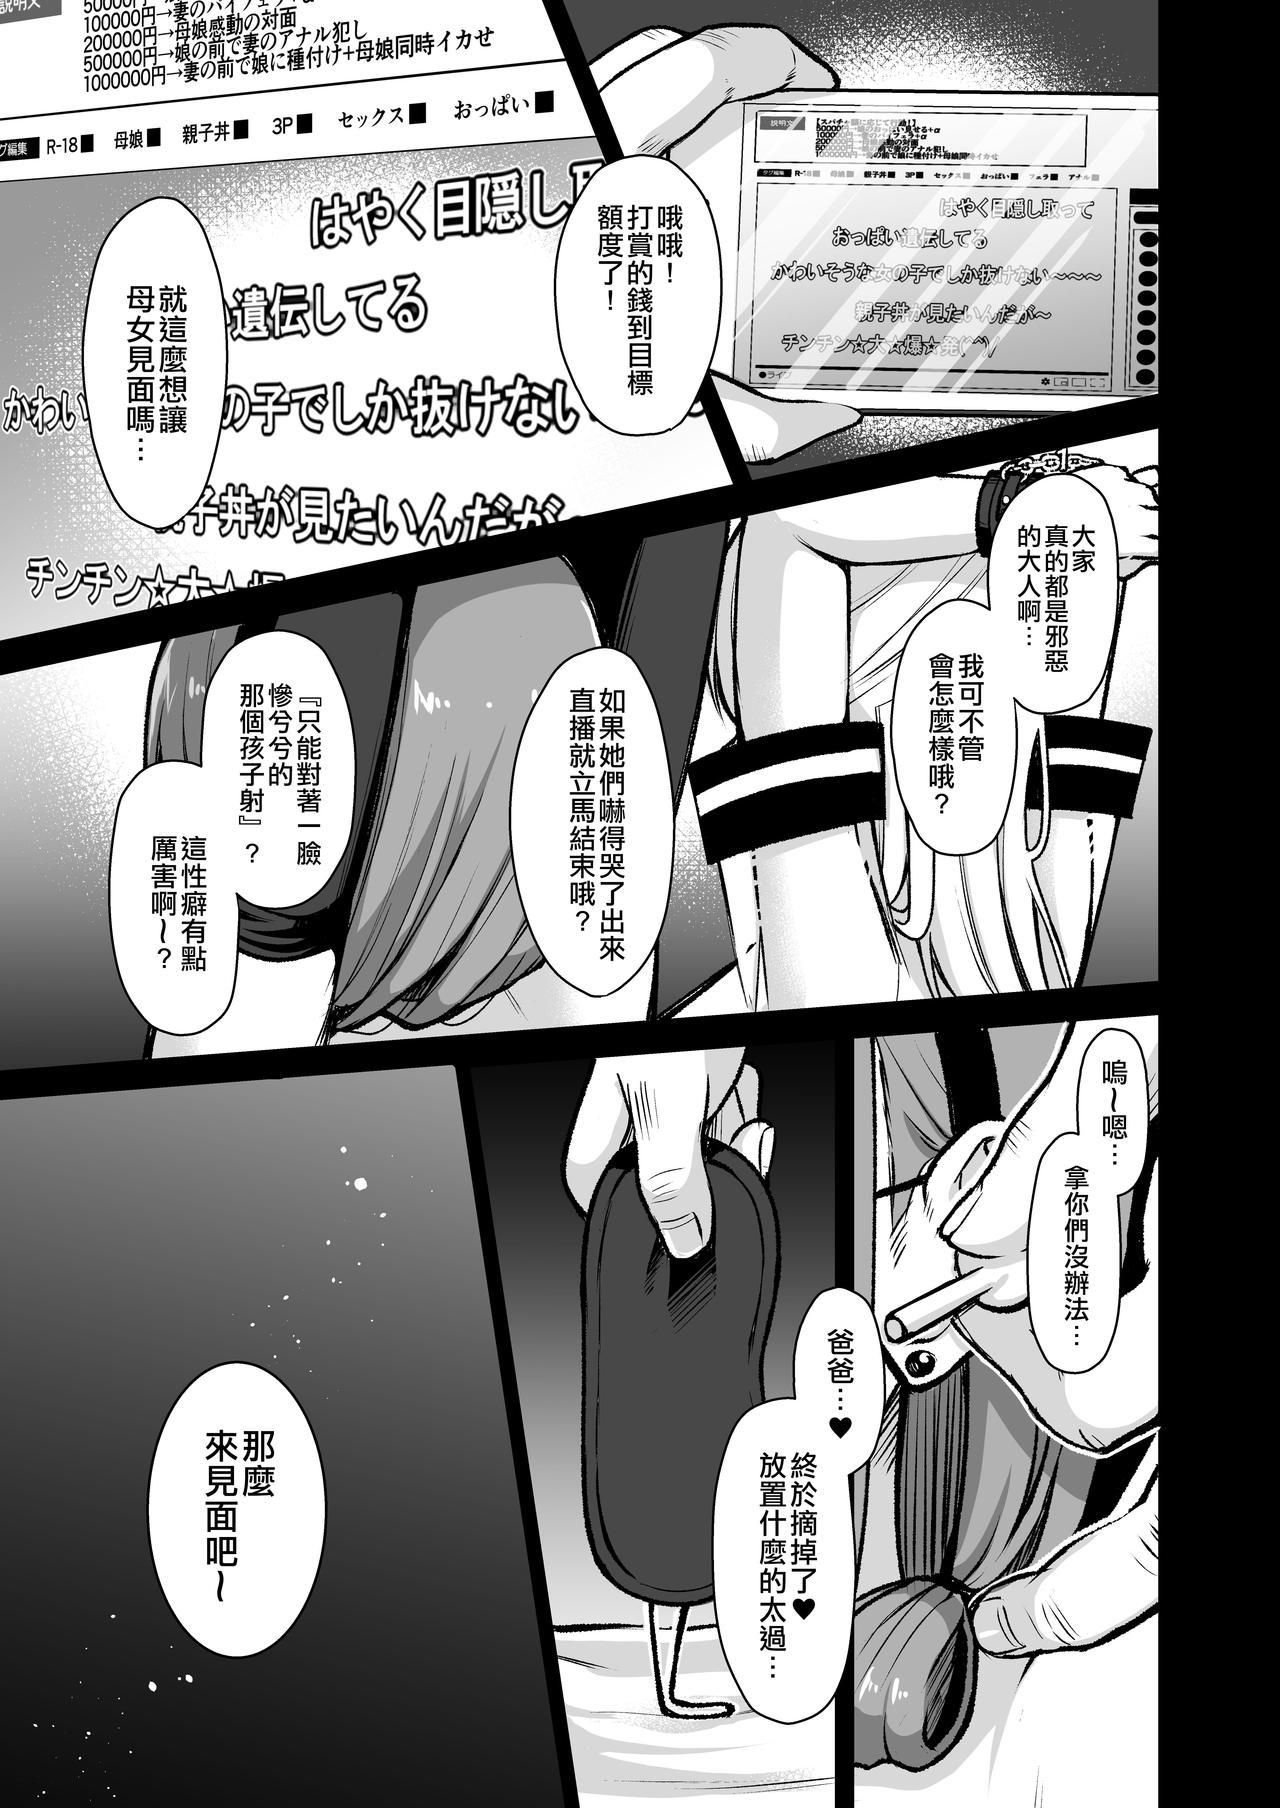 Gilf Himitsu 4 - Original  - Page 10